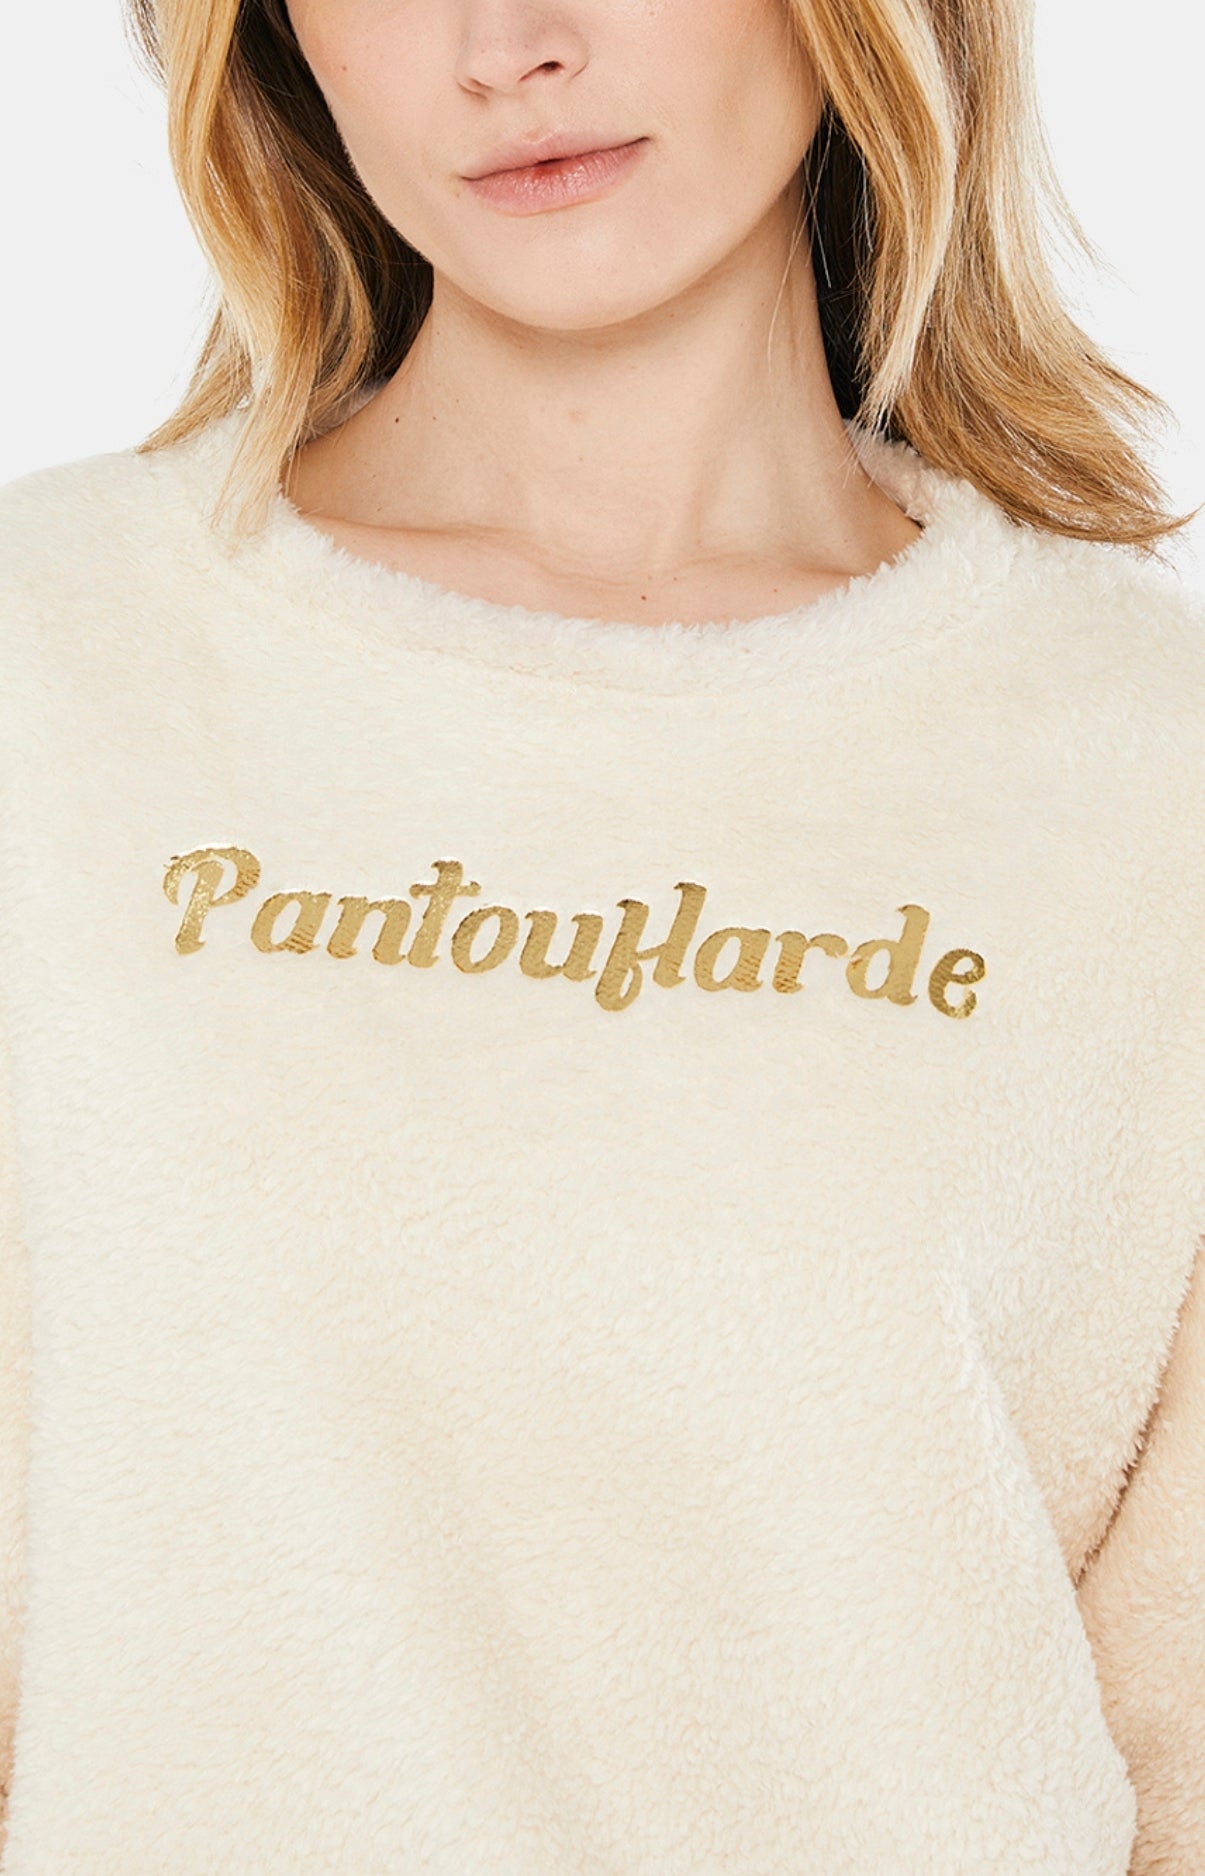 Pajamas - Pantouflard